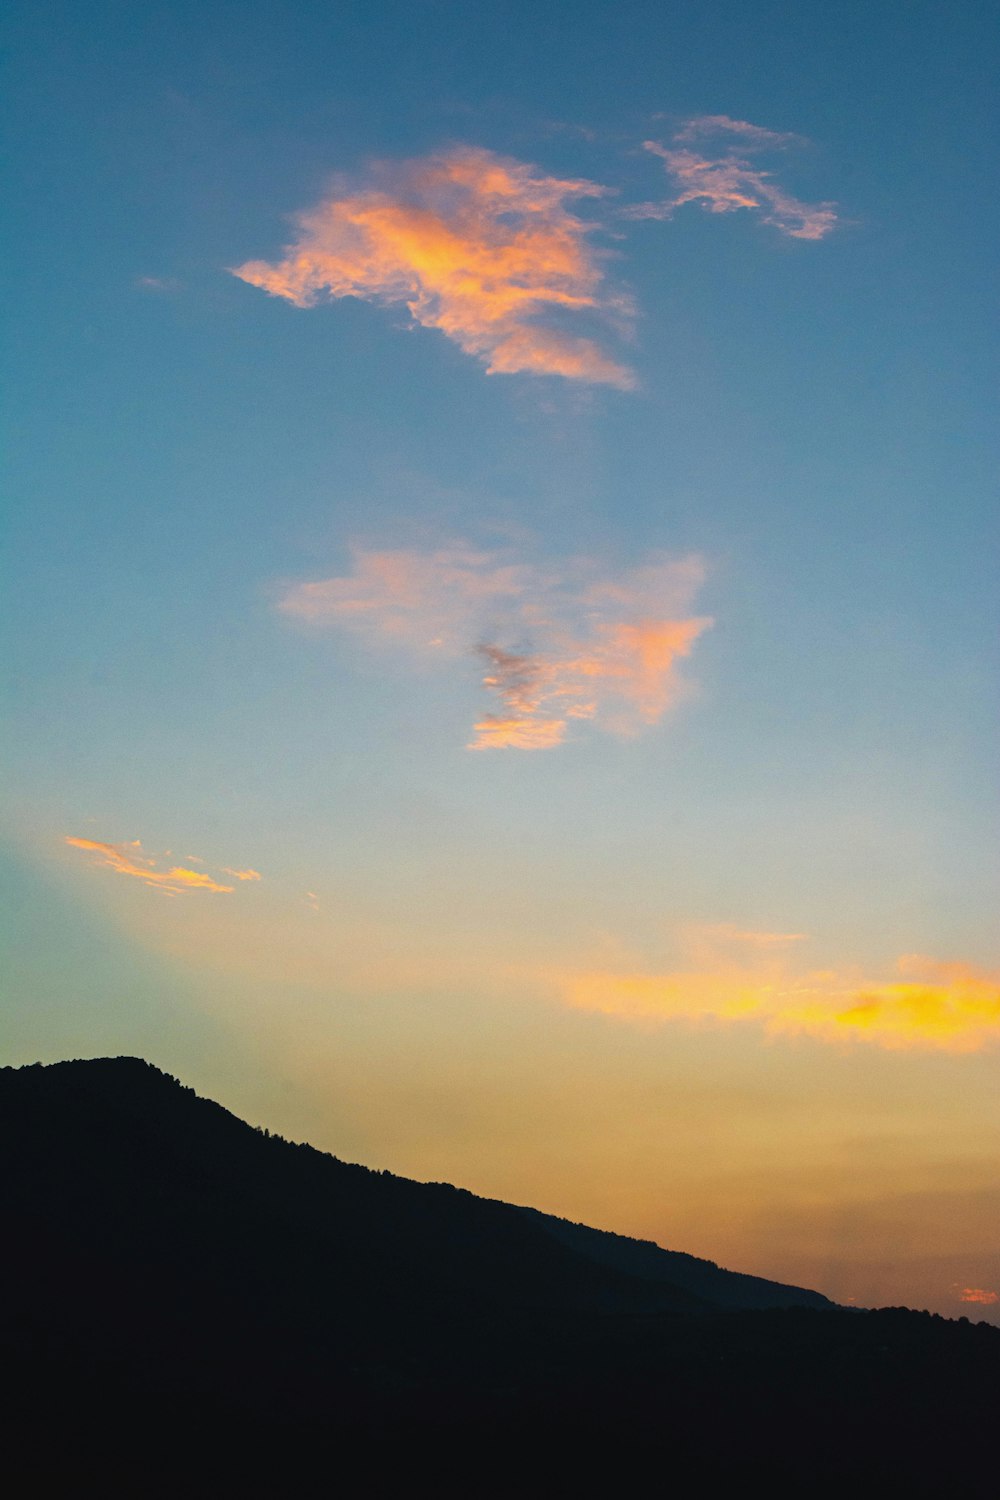 Silueta de la montaña bajo el cielo nublado durante la puesta del sol